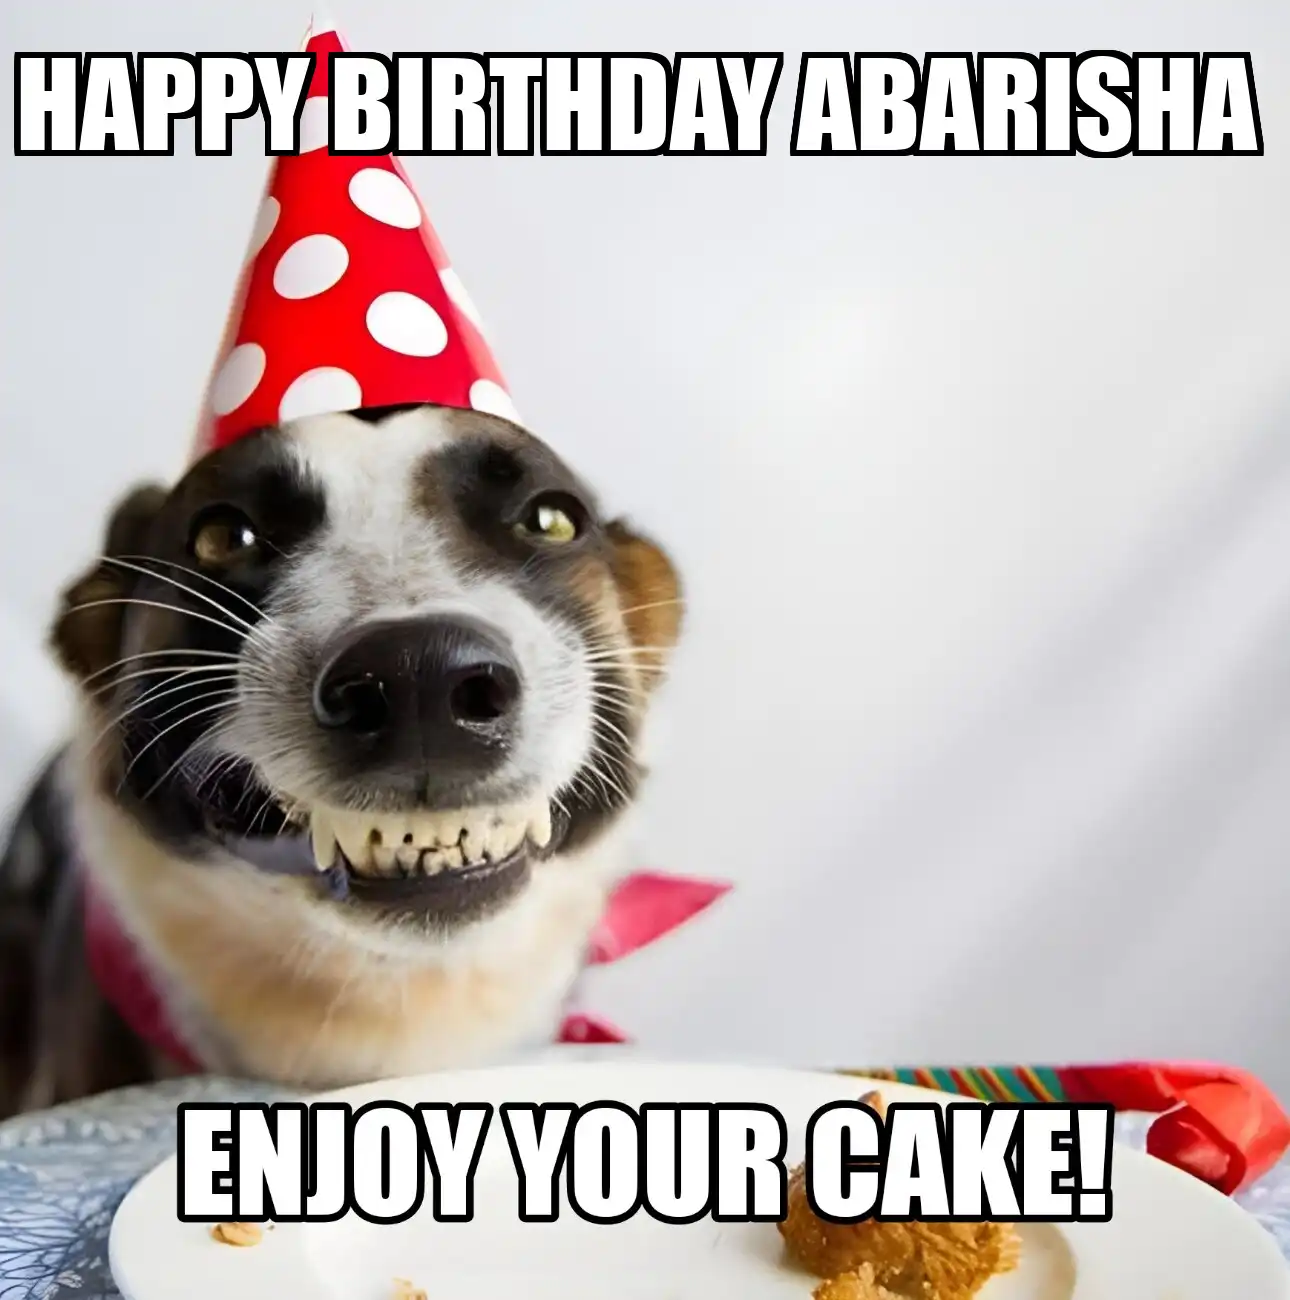 Happy Birthday Abarisha Enjoy Your Cake Dog Meme